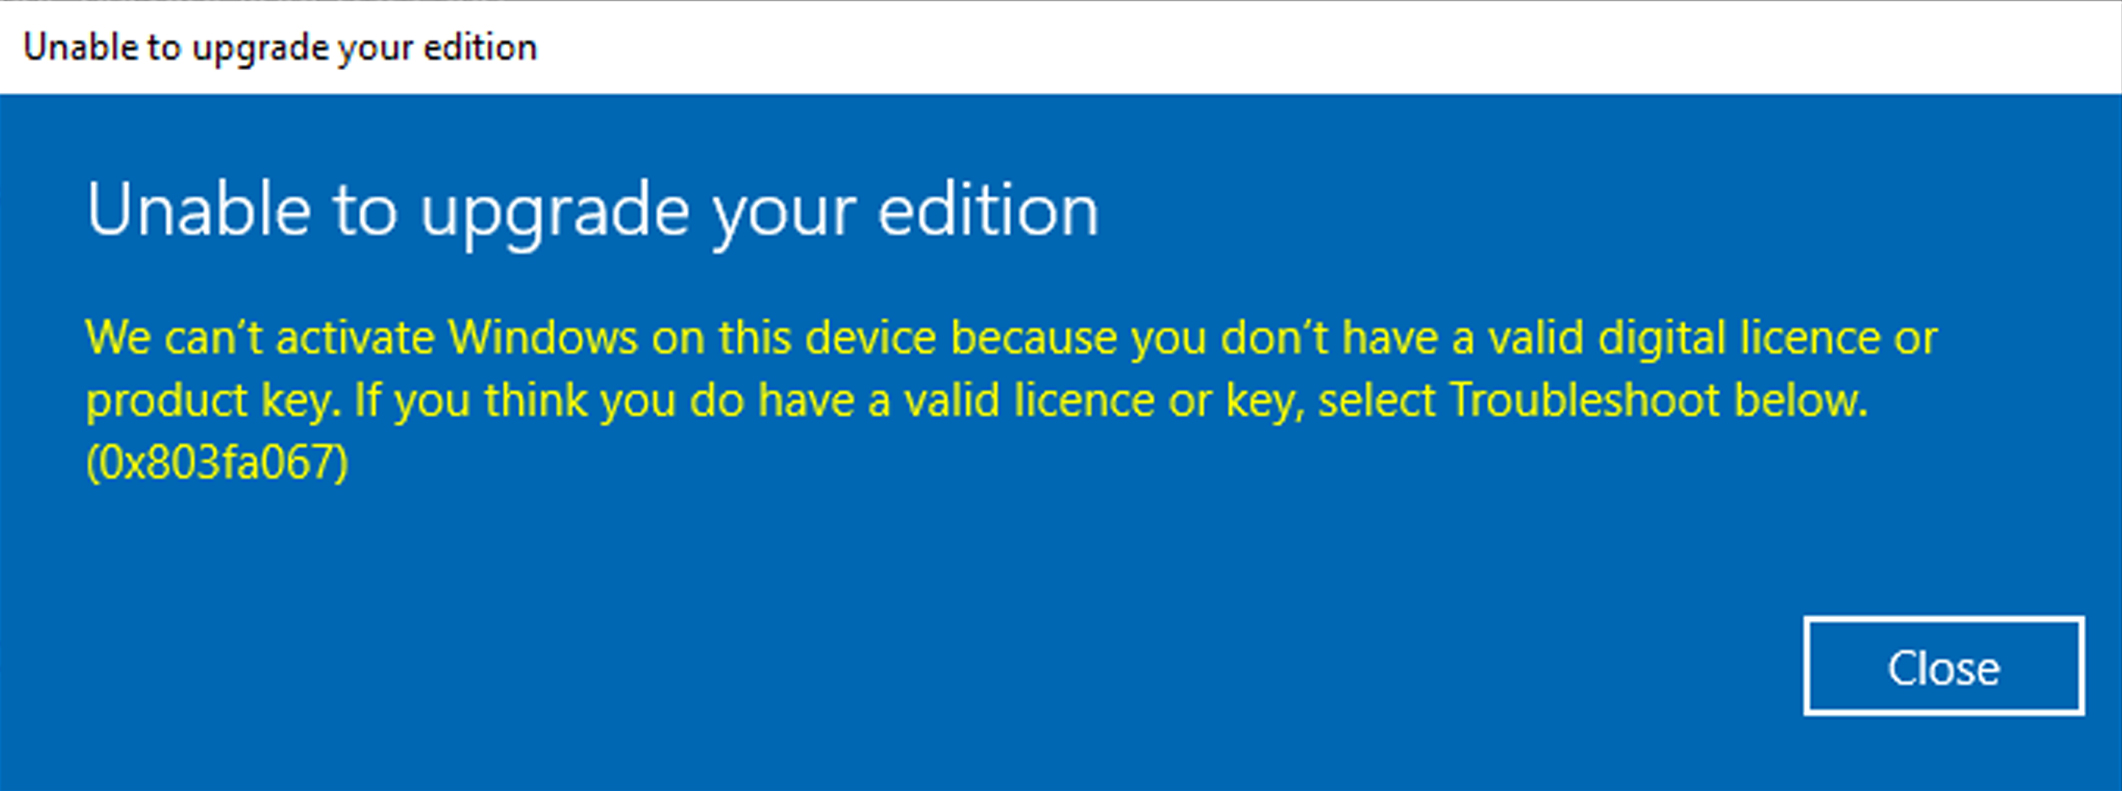 Почему нельзя активировать. Ошибка активации виндовс. Ошибка активации Windows 10. Не удается активировать виндовс. Ошибка активации 0x803fa067.